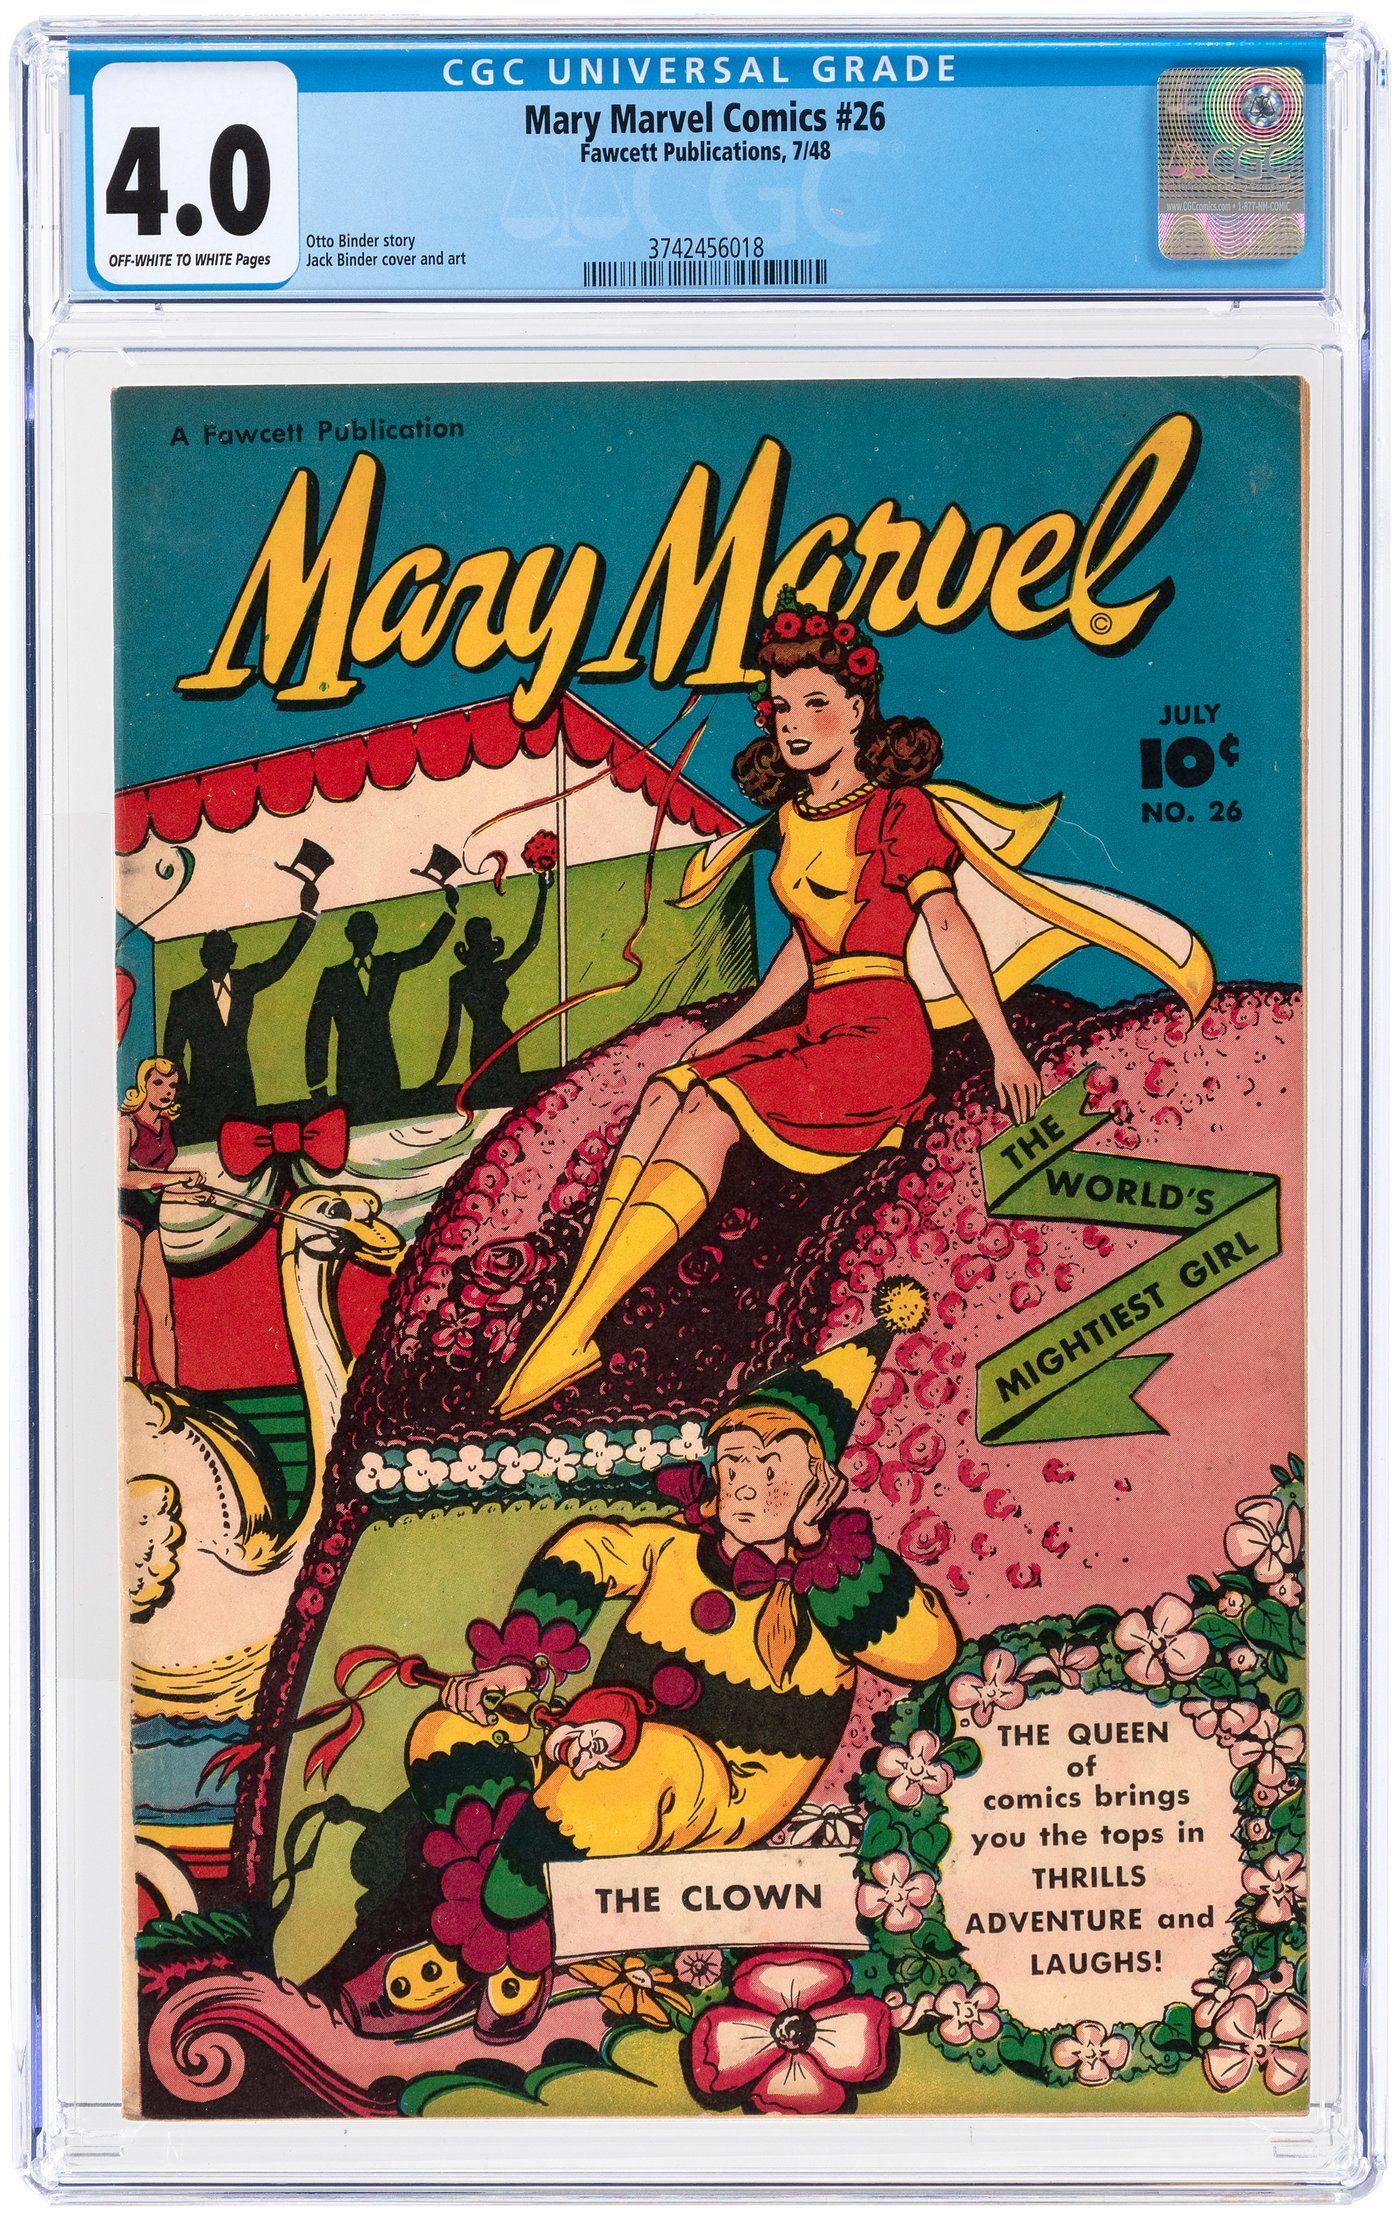 Mary Marvel - Wikipedia